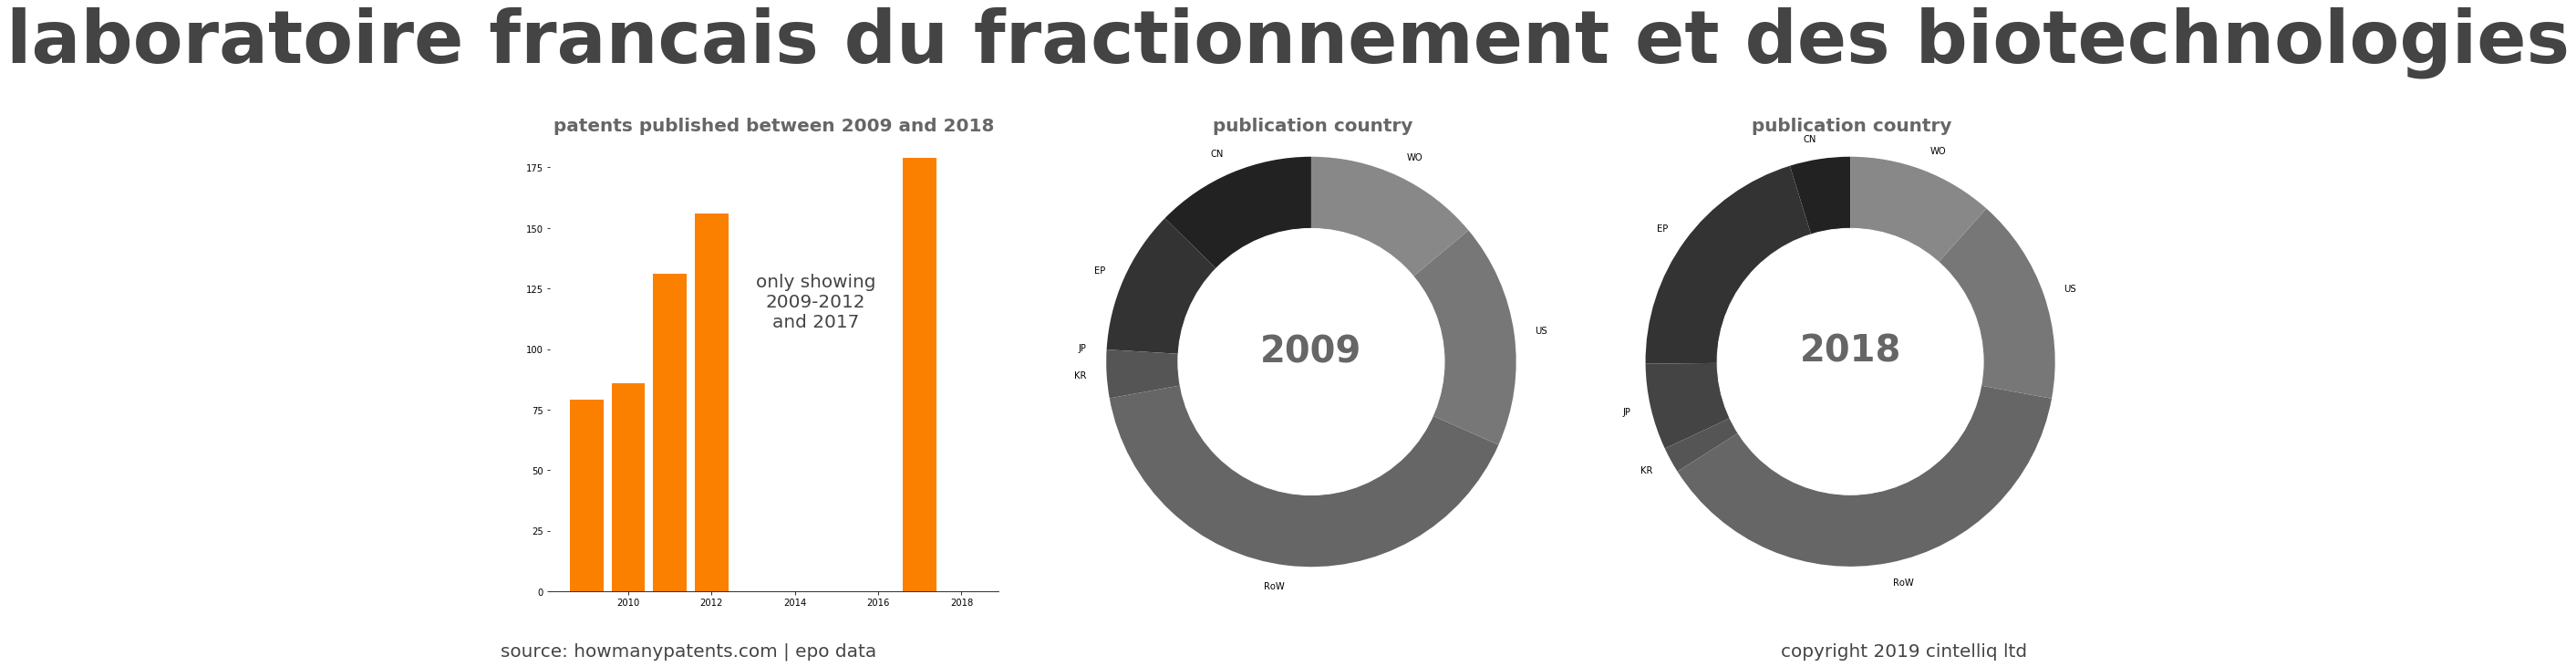 summary of patents for Laboratoire Francais Du Fractionnement Et Des Biotechnologies